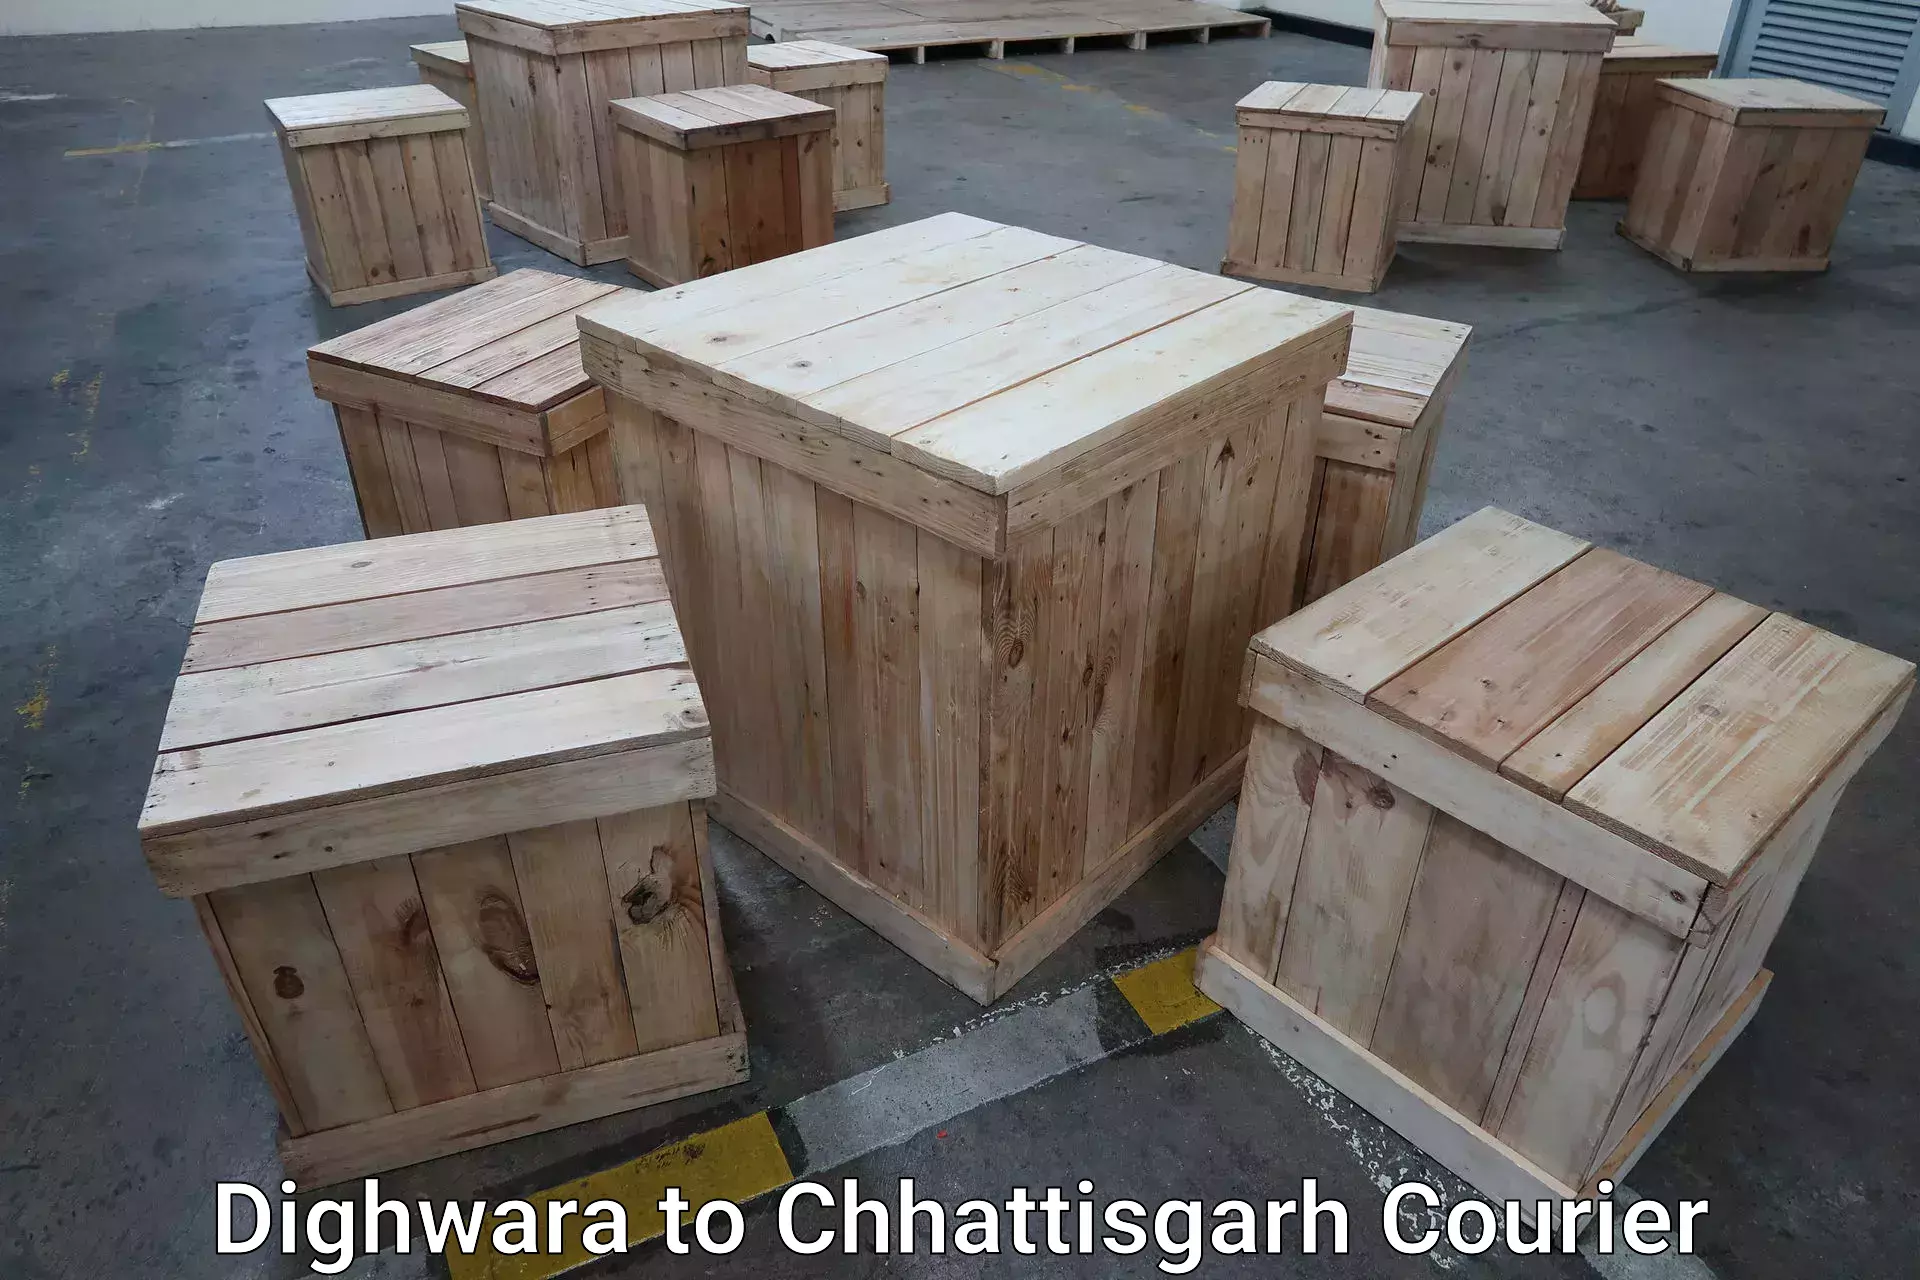 Baggage transport services Dighwara to Chhattisgarh